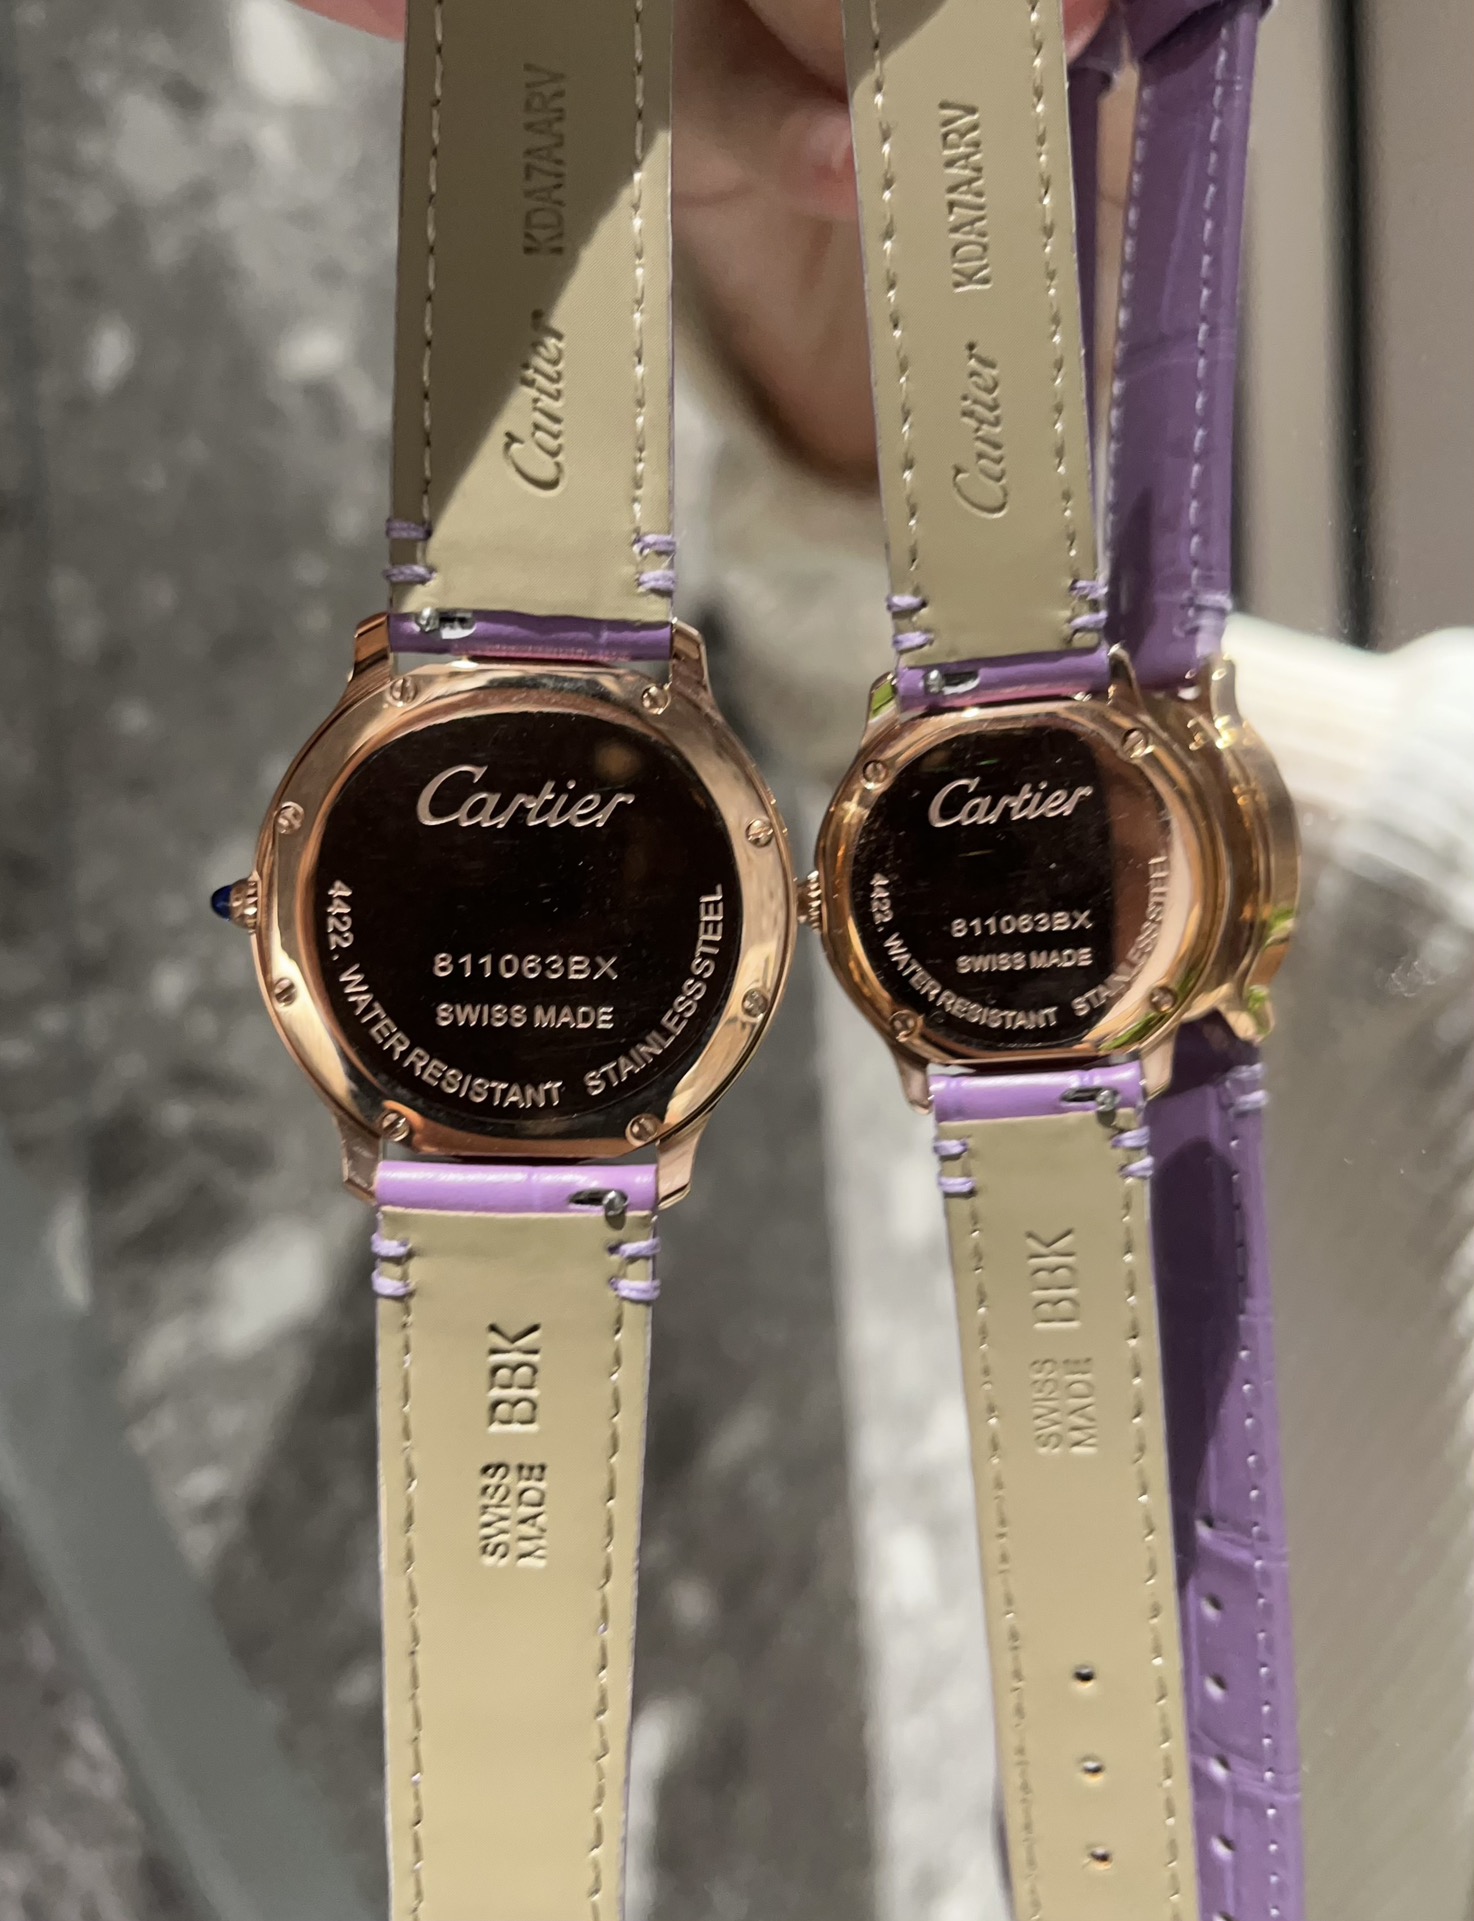 カルティエ ロンド マスト紫色のカップルコピー時計ブランドC50280-02[1]